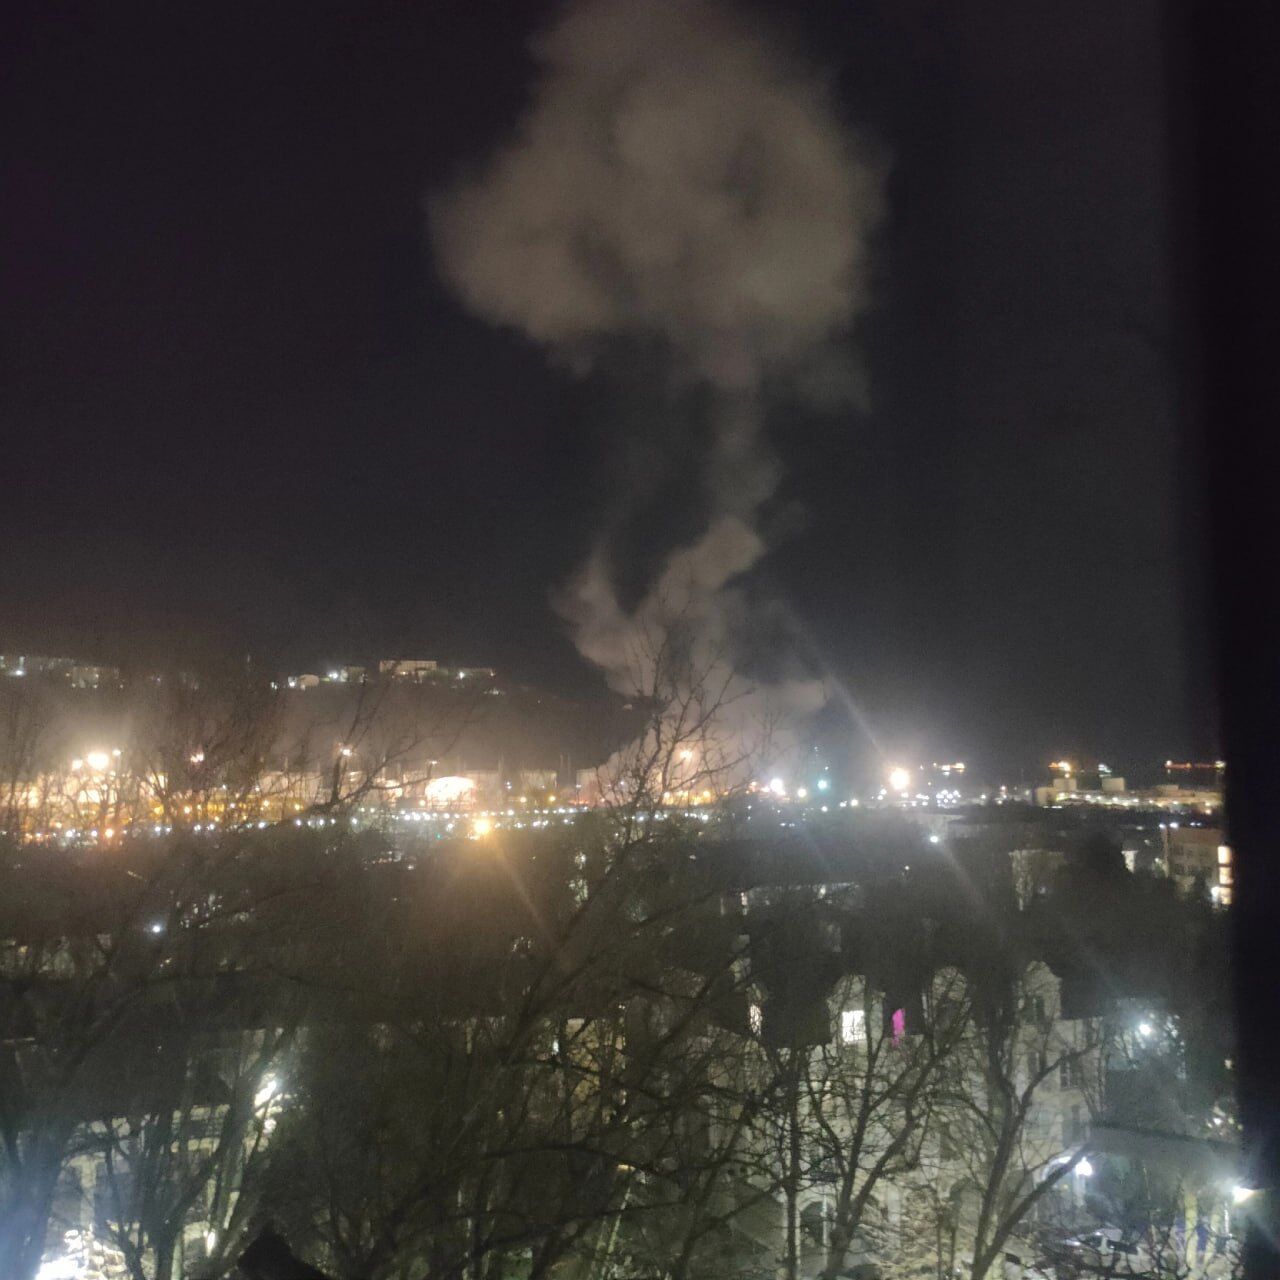 Містян розбудили гучні звуки: в російському Туапсе стався вибух на території нафтобази. Фото і відео